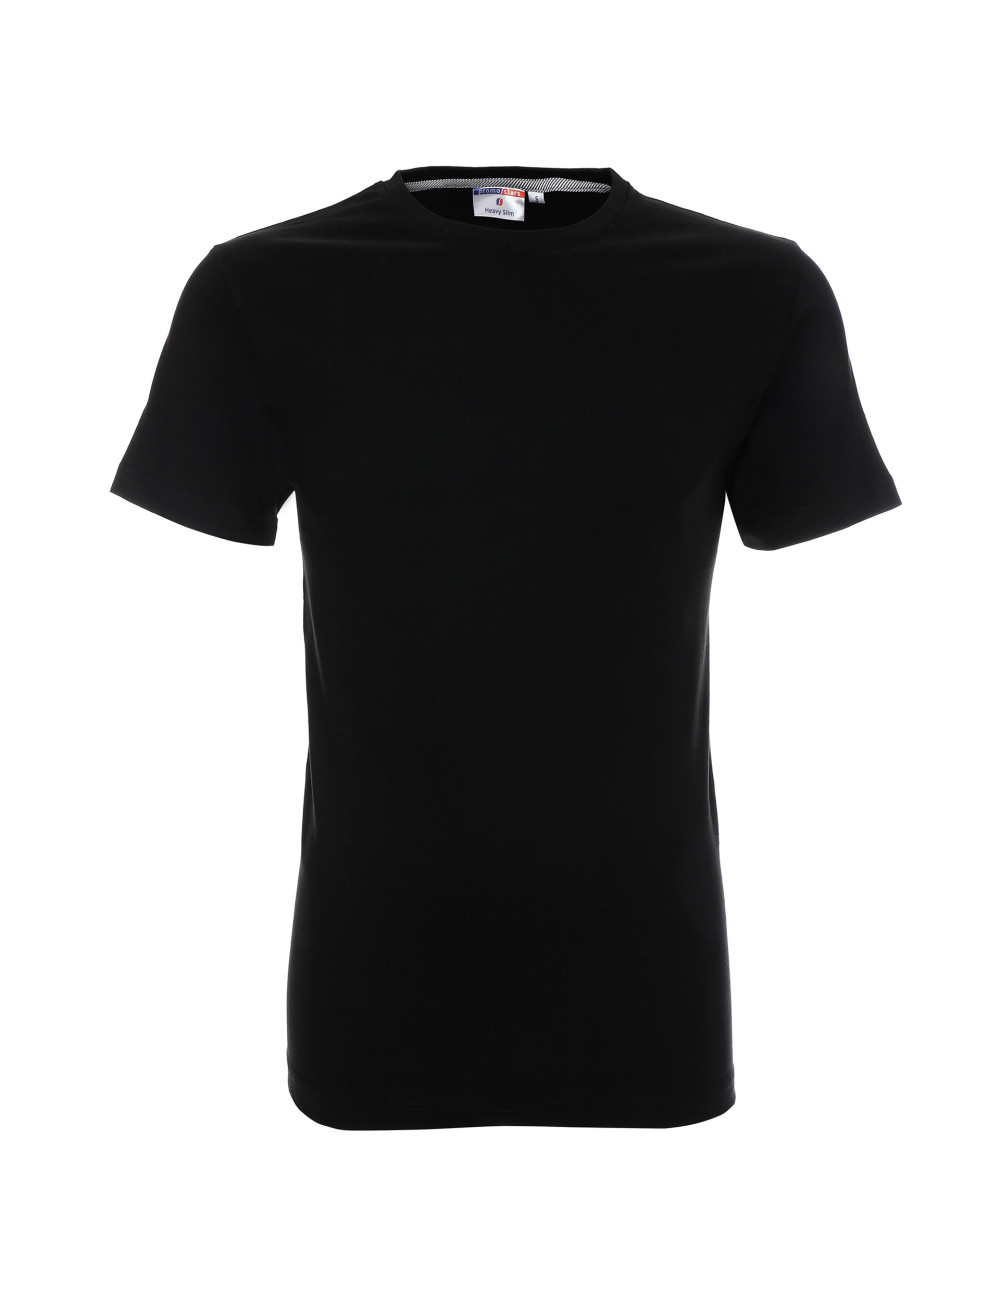 Schweres, schmales Herren-T-Shirt in Schwarz von Promostars